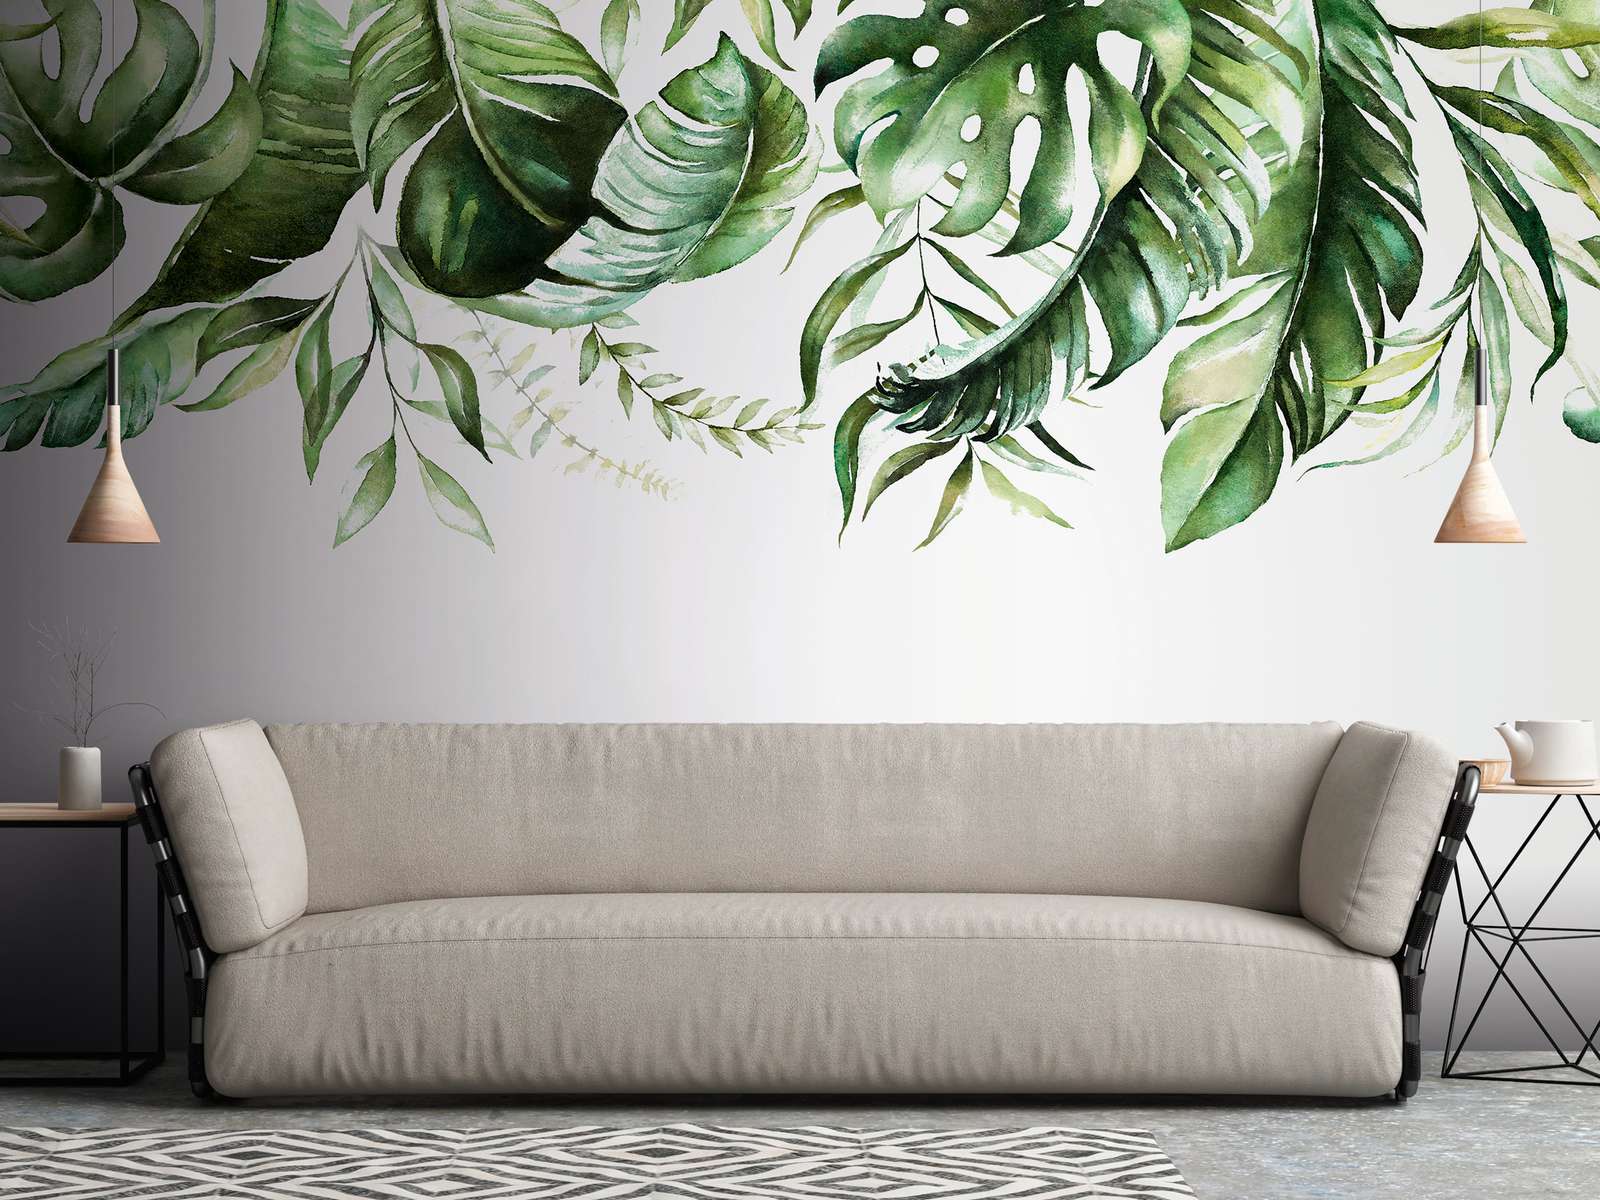             Mural de pared con zarcillos de hojas tropicales en una pared - Verde, Blanco
        